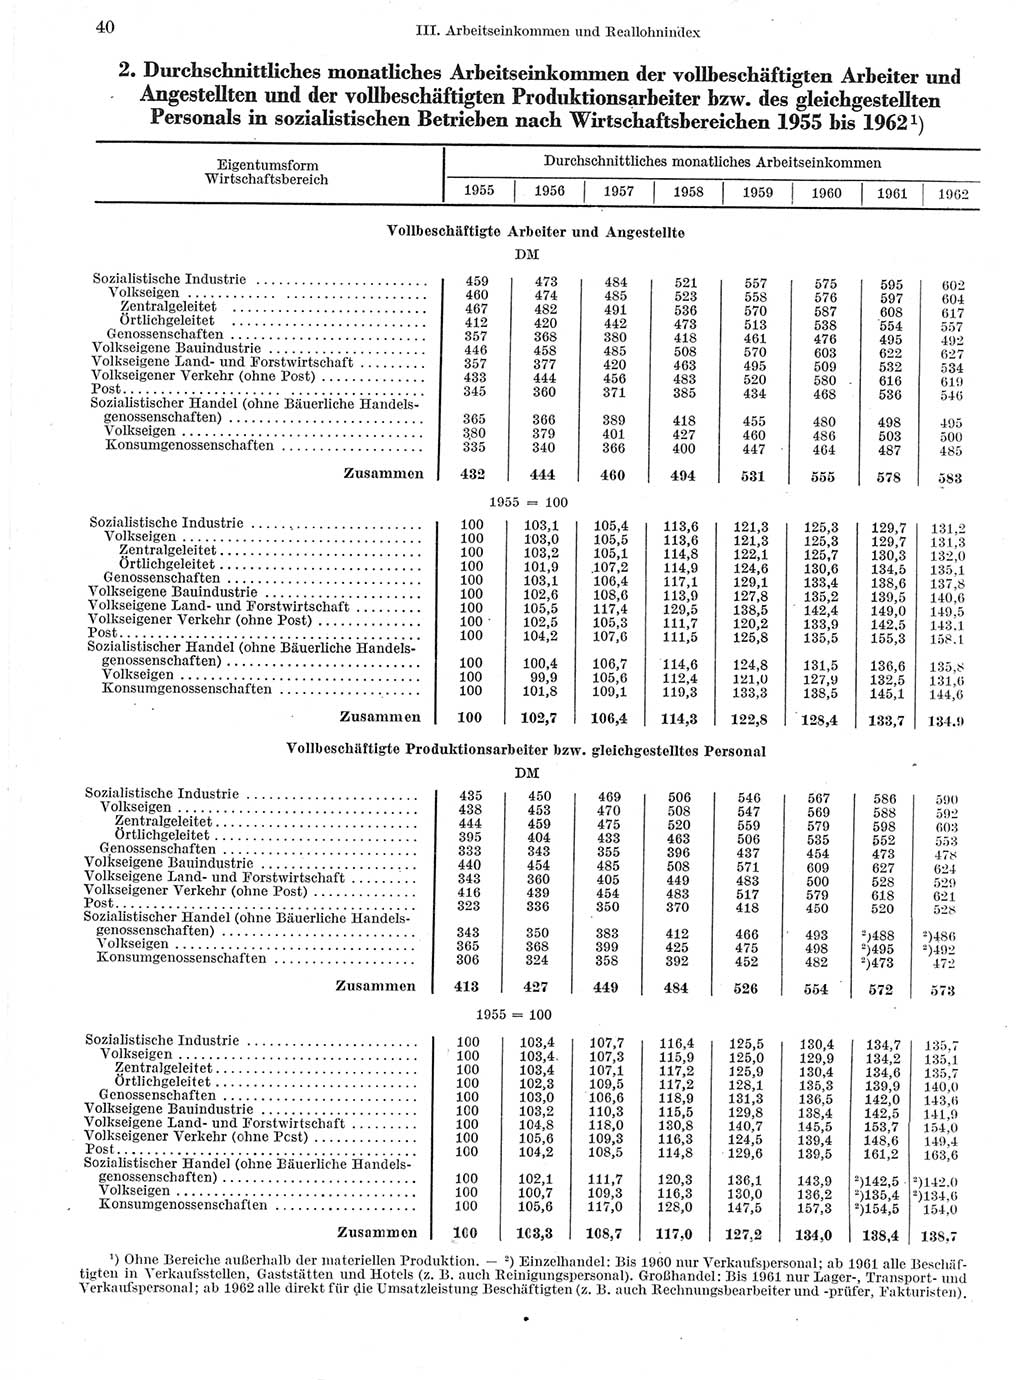 Statistisches Jahrbuch der Deutschen Demokratischen Republik (DDR) 1963, Seite 40 (Stat. Jb. DDR 1963, S. 40)